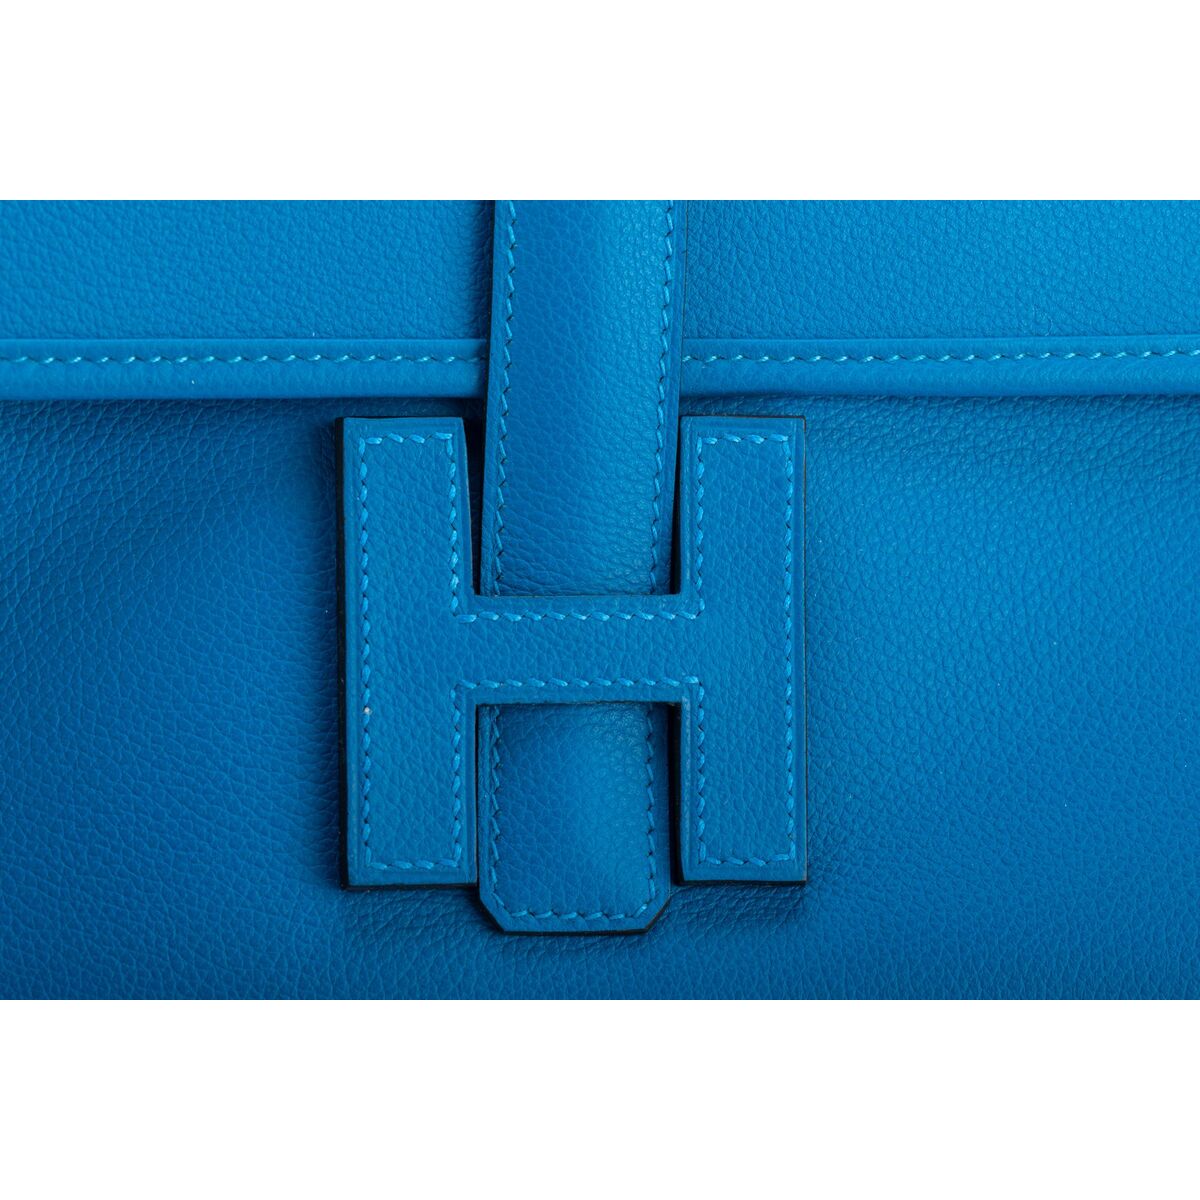 Hermes Jige Elan Clutch Swift 29 Bleu Electrique in Swift Leather - US